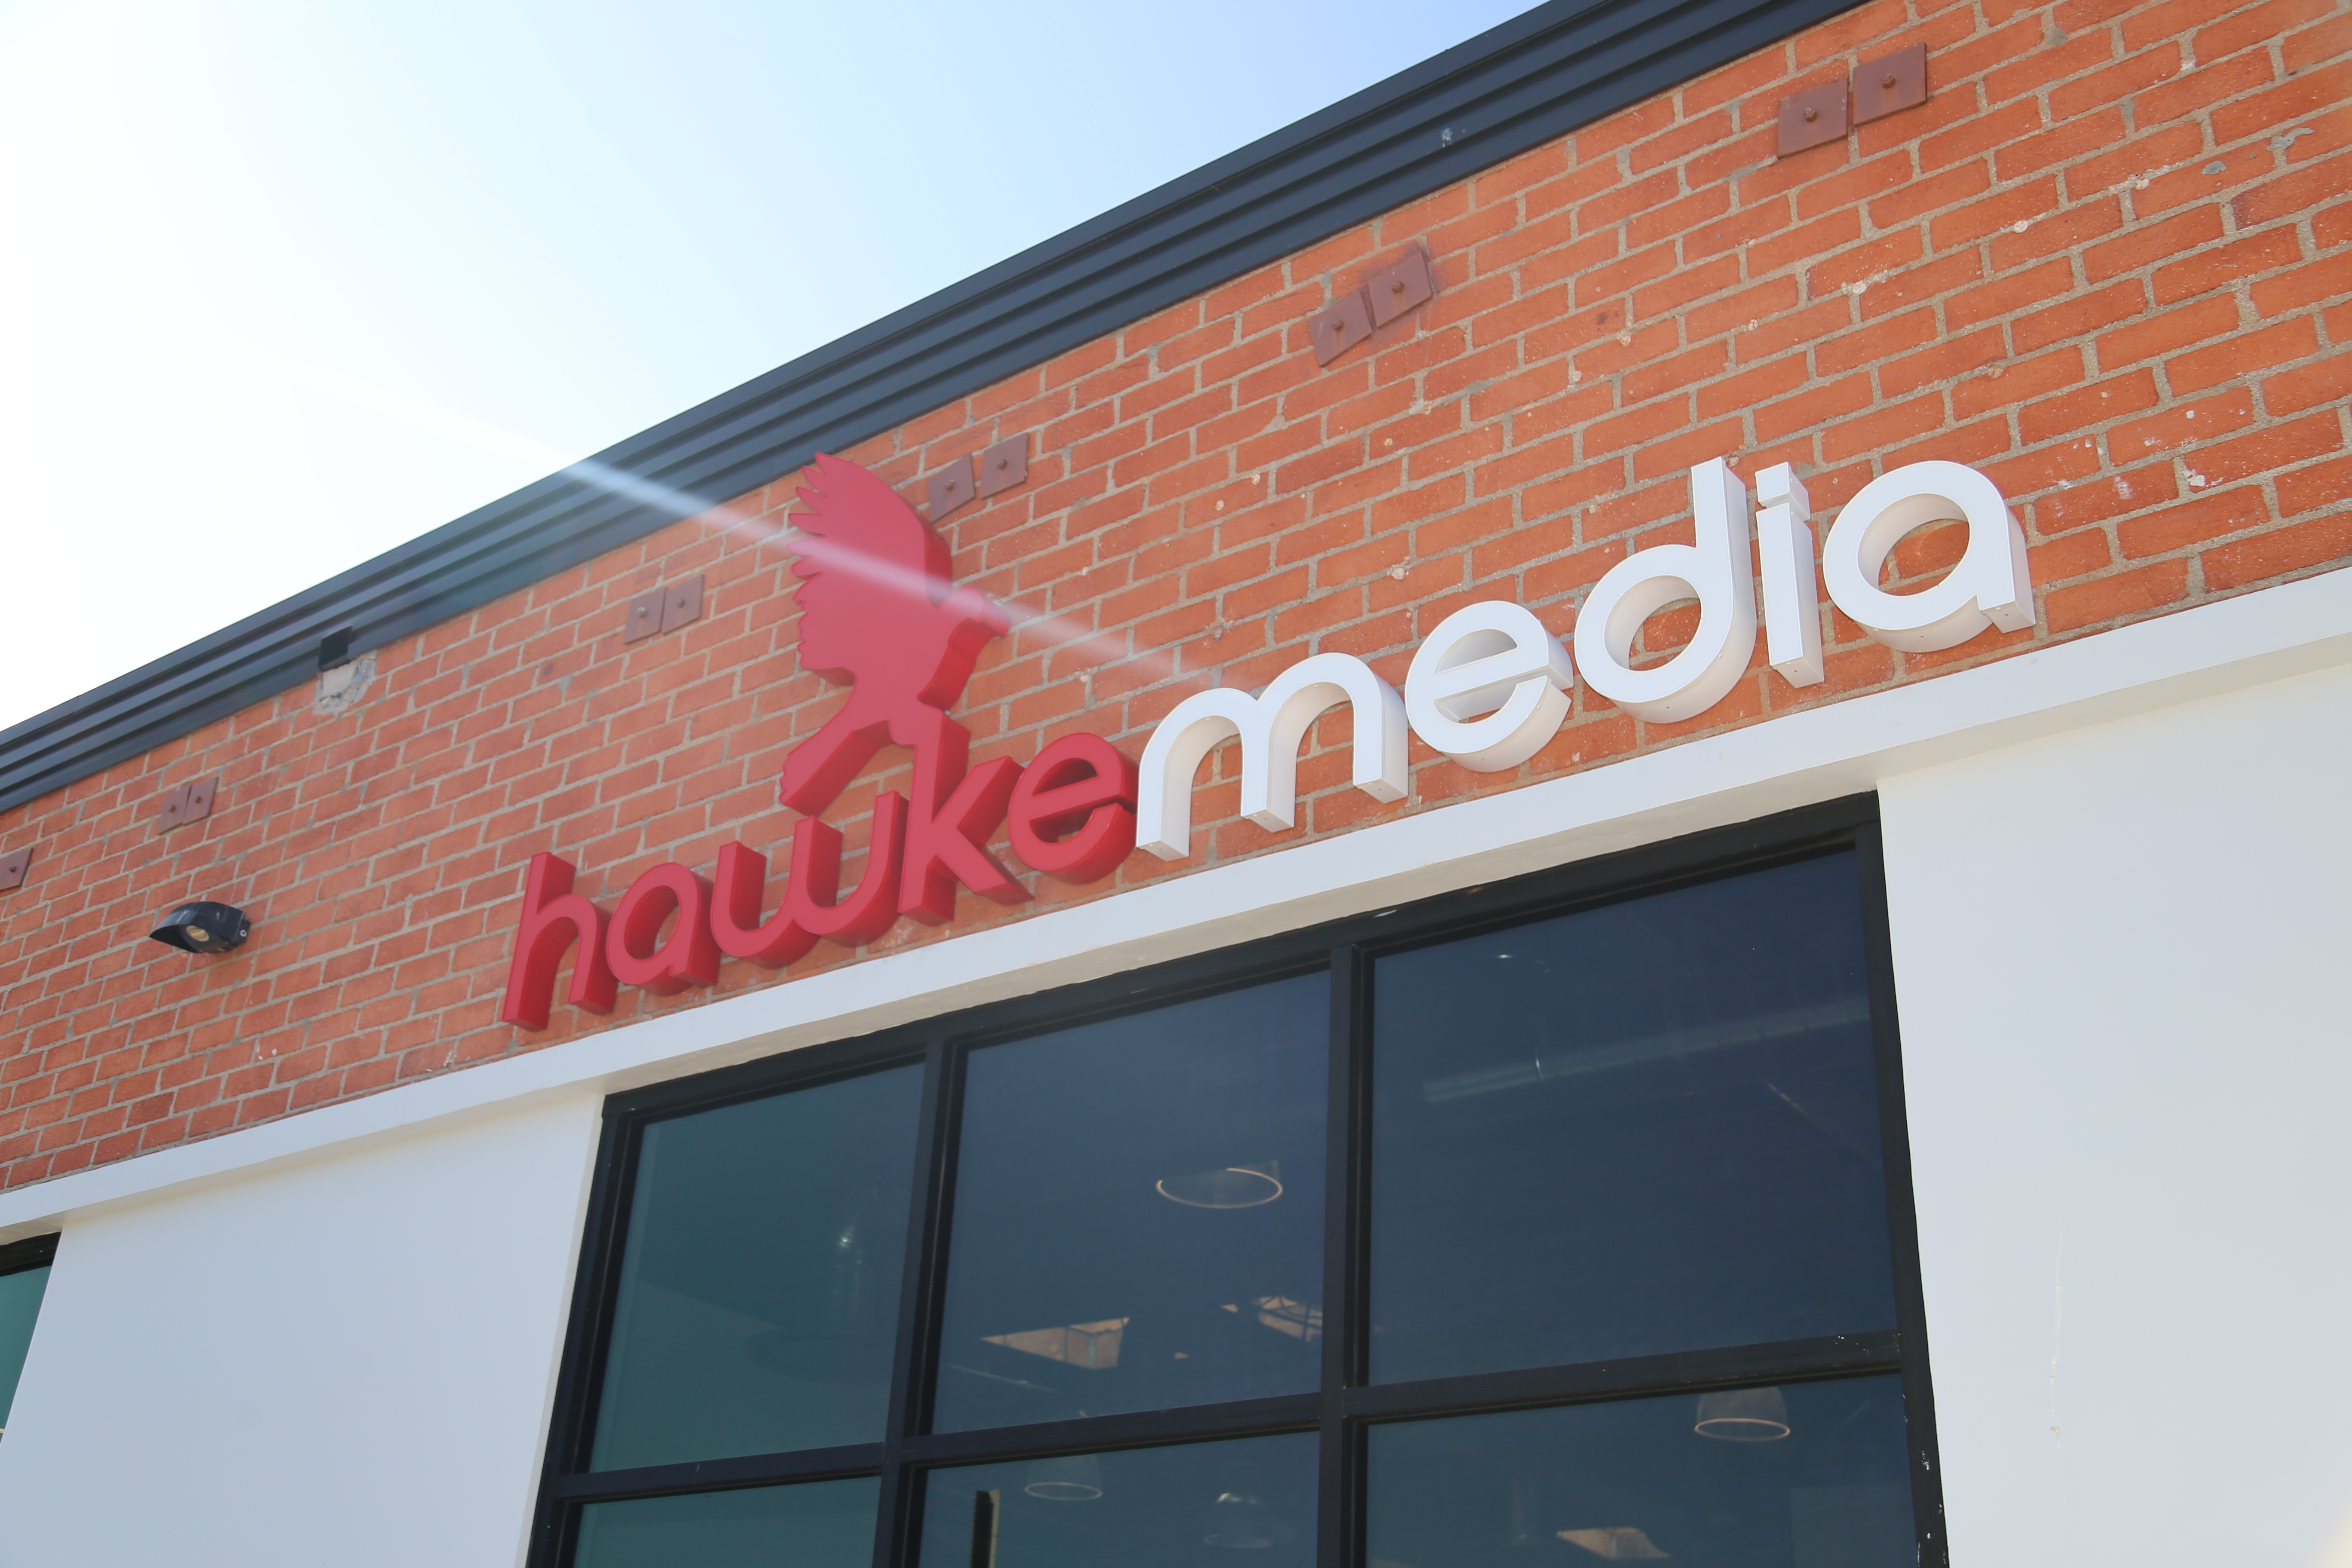 Hawke Media